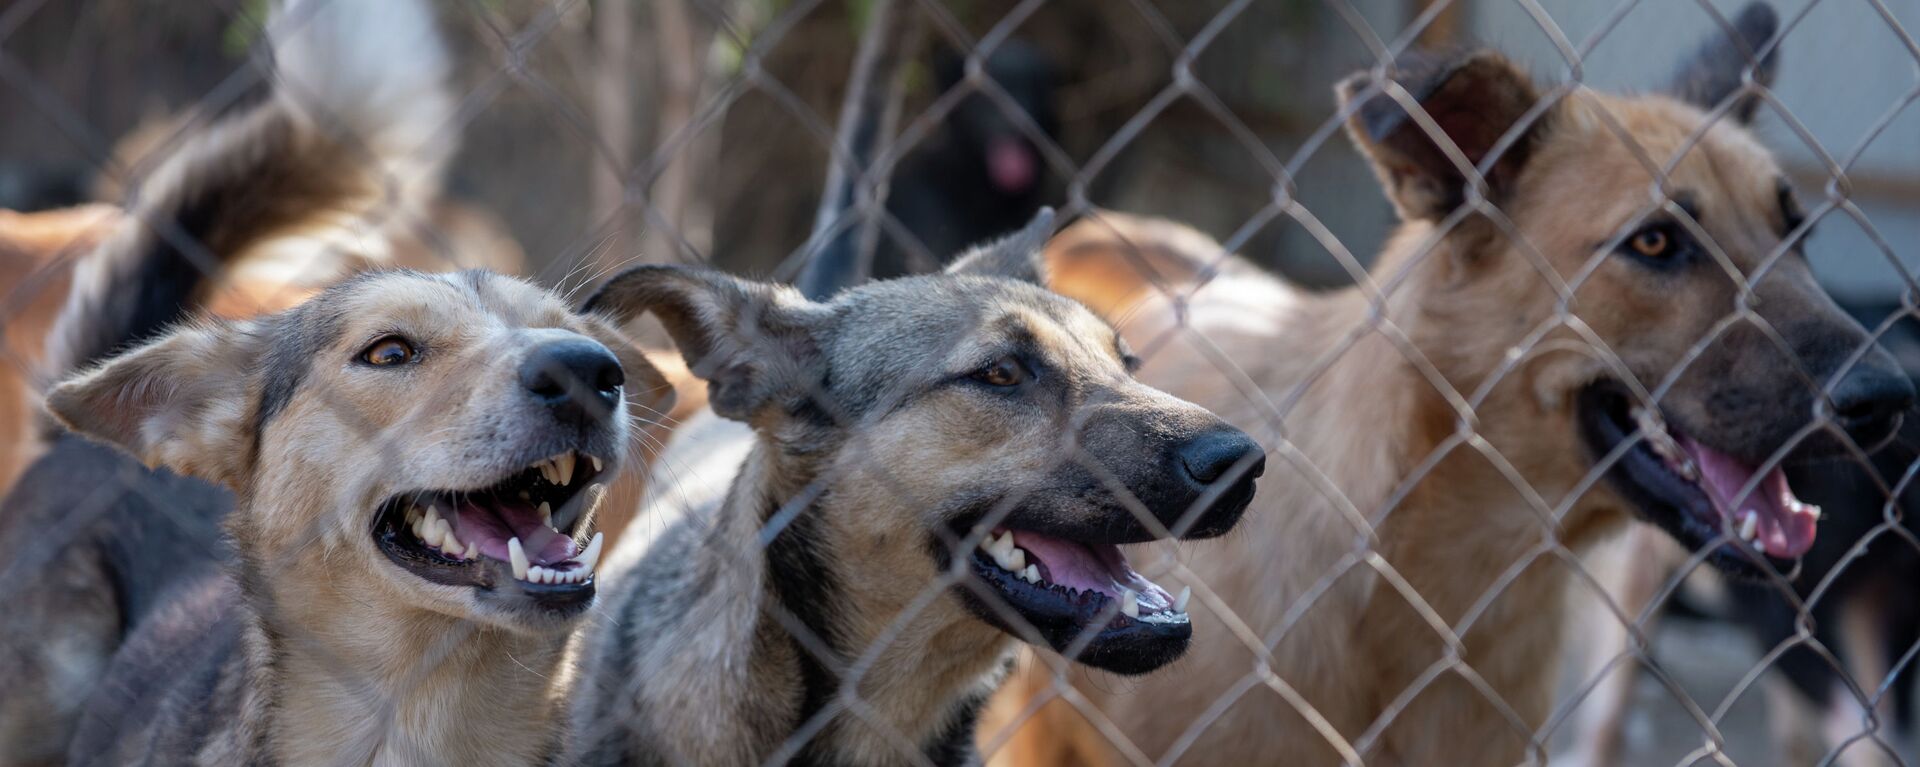 87 собак и 11 кошек обнаружили зооволонтеры на черной передержке в дачном поселке Али - Sputnik Қазақстан, 1920, 24.12.2021